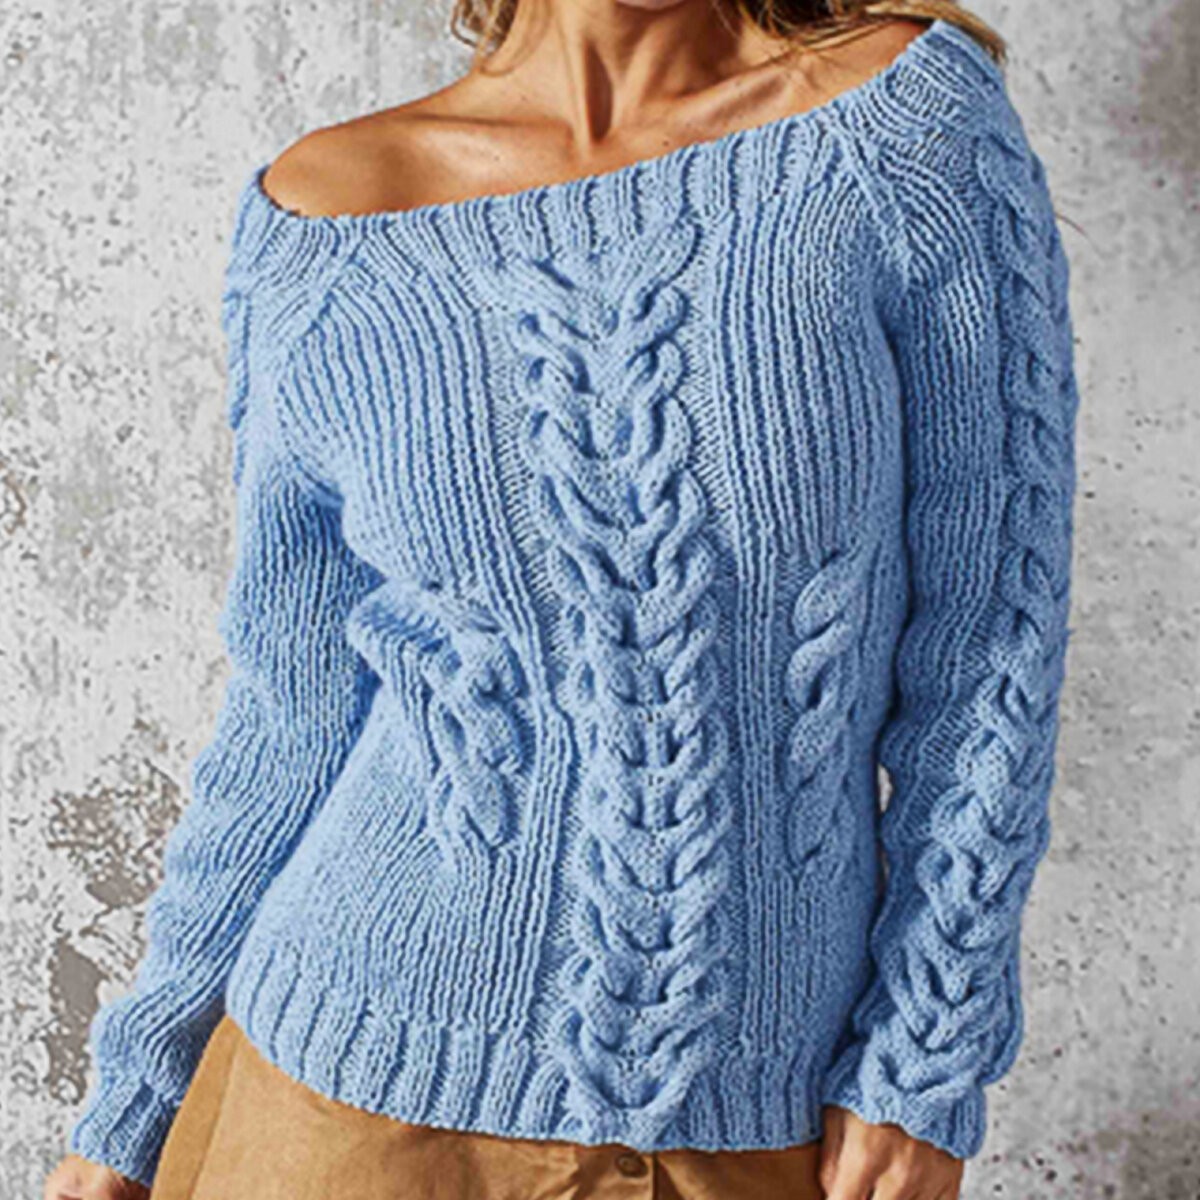 Зимний свитер спицами. 5 моделей со схемами